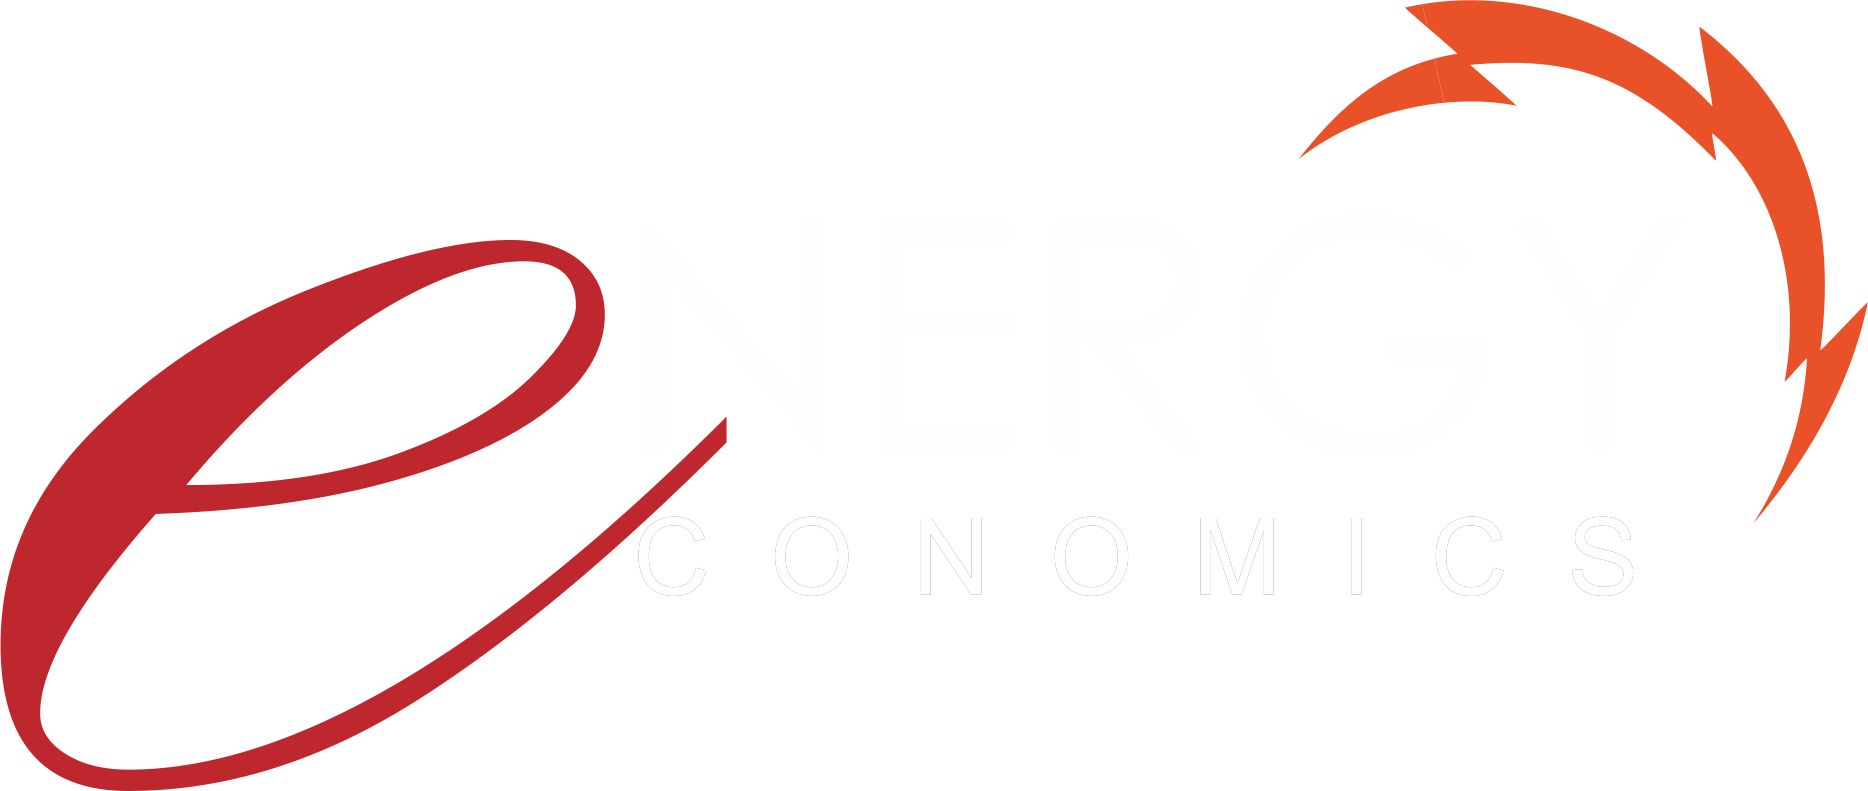 Energy Economics logo